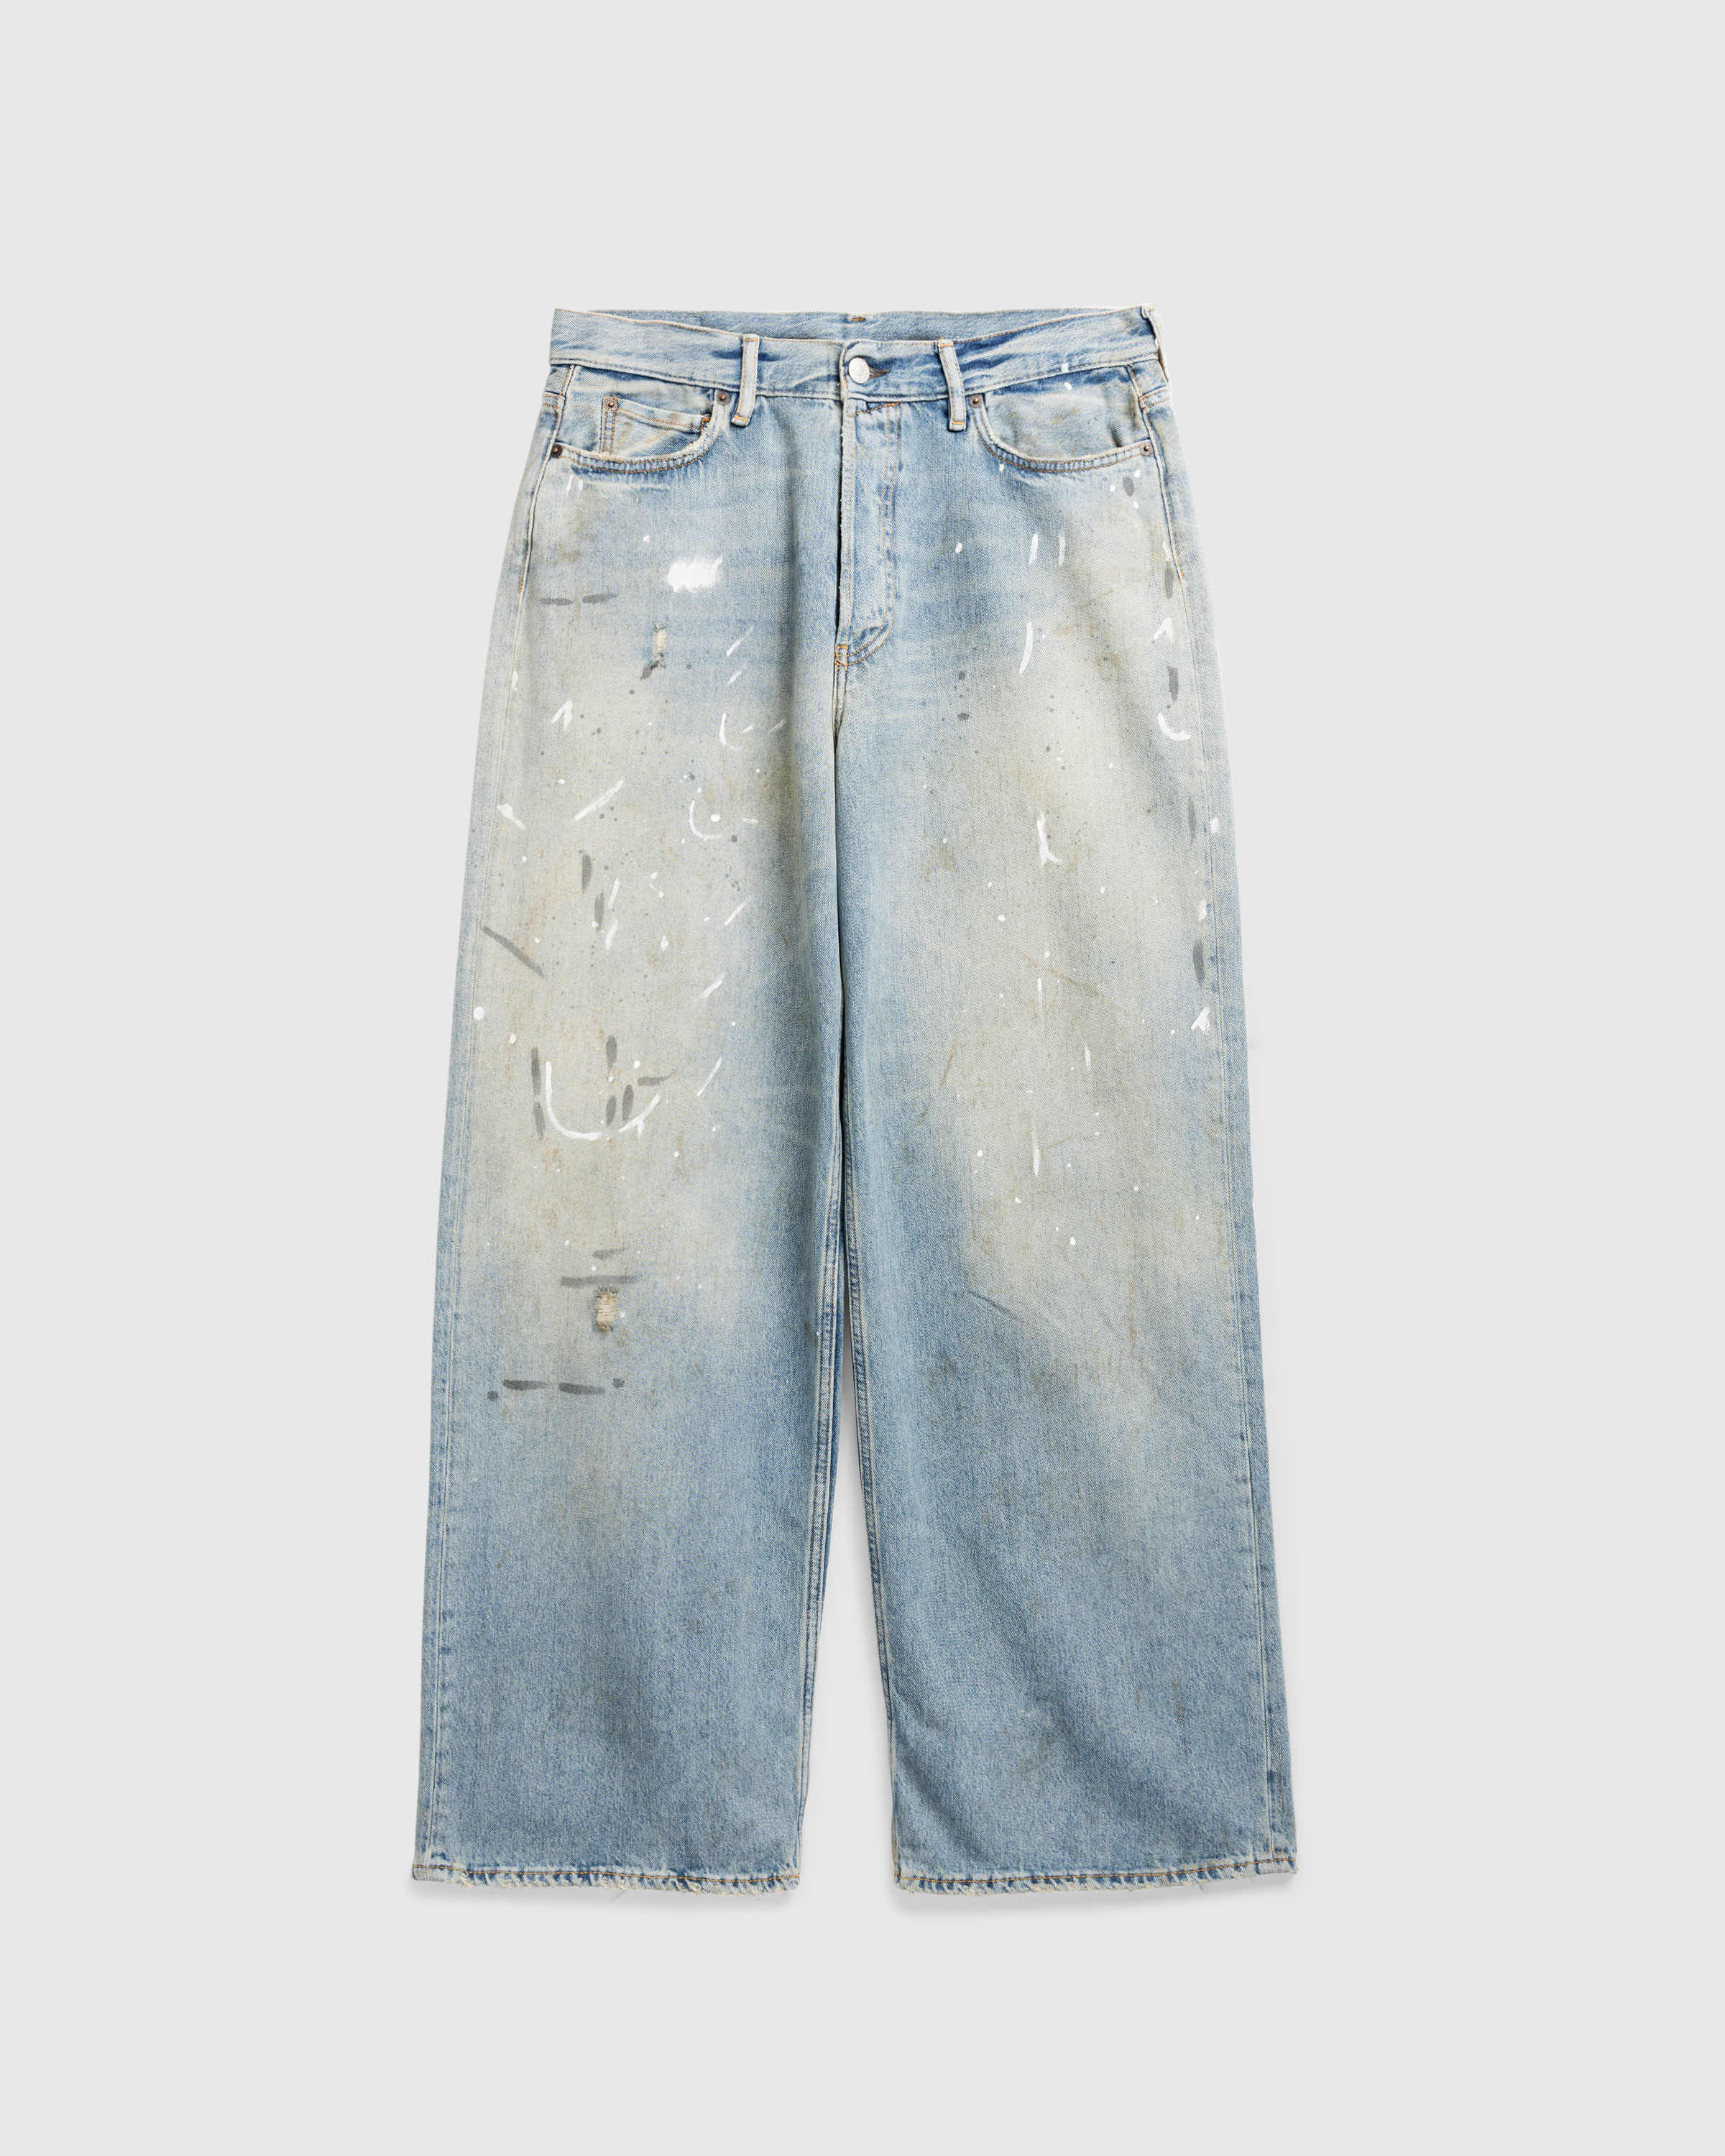 Acne Studios – Loose Fit Jeans 1981M Light Blue - Pants - Blue - Image 1